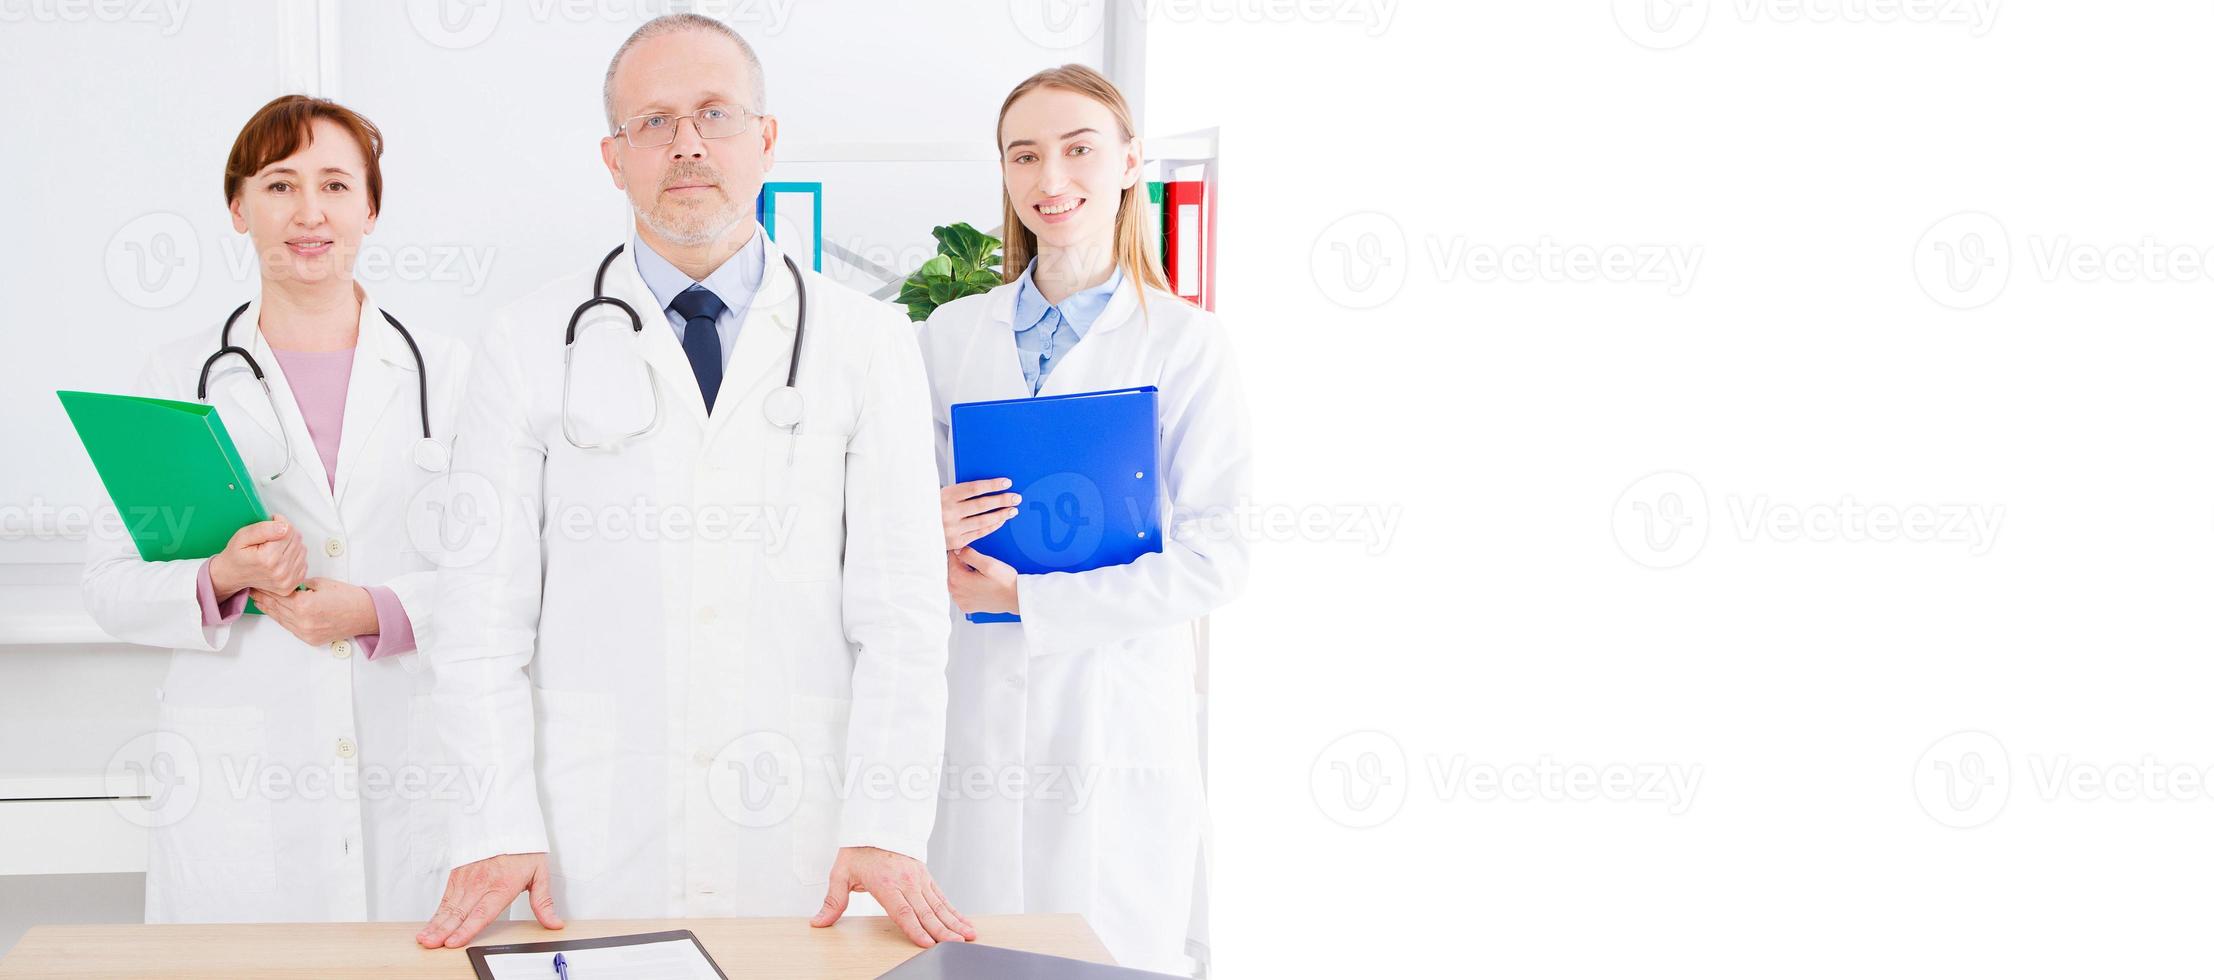 läkare poserar med medicinsk personal, sjuksköterska på kontoret och kopia utrymme, banner av skylt foto